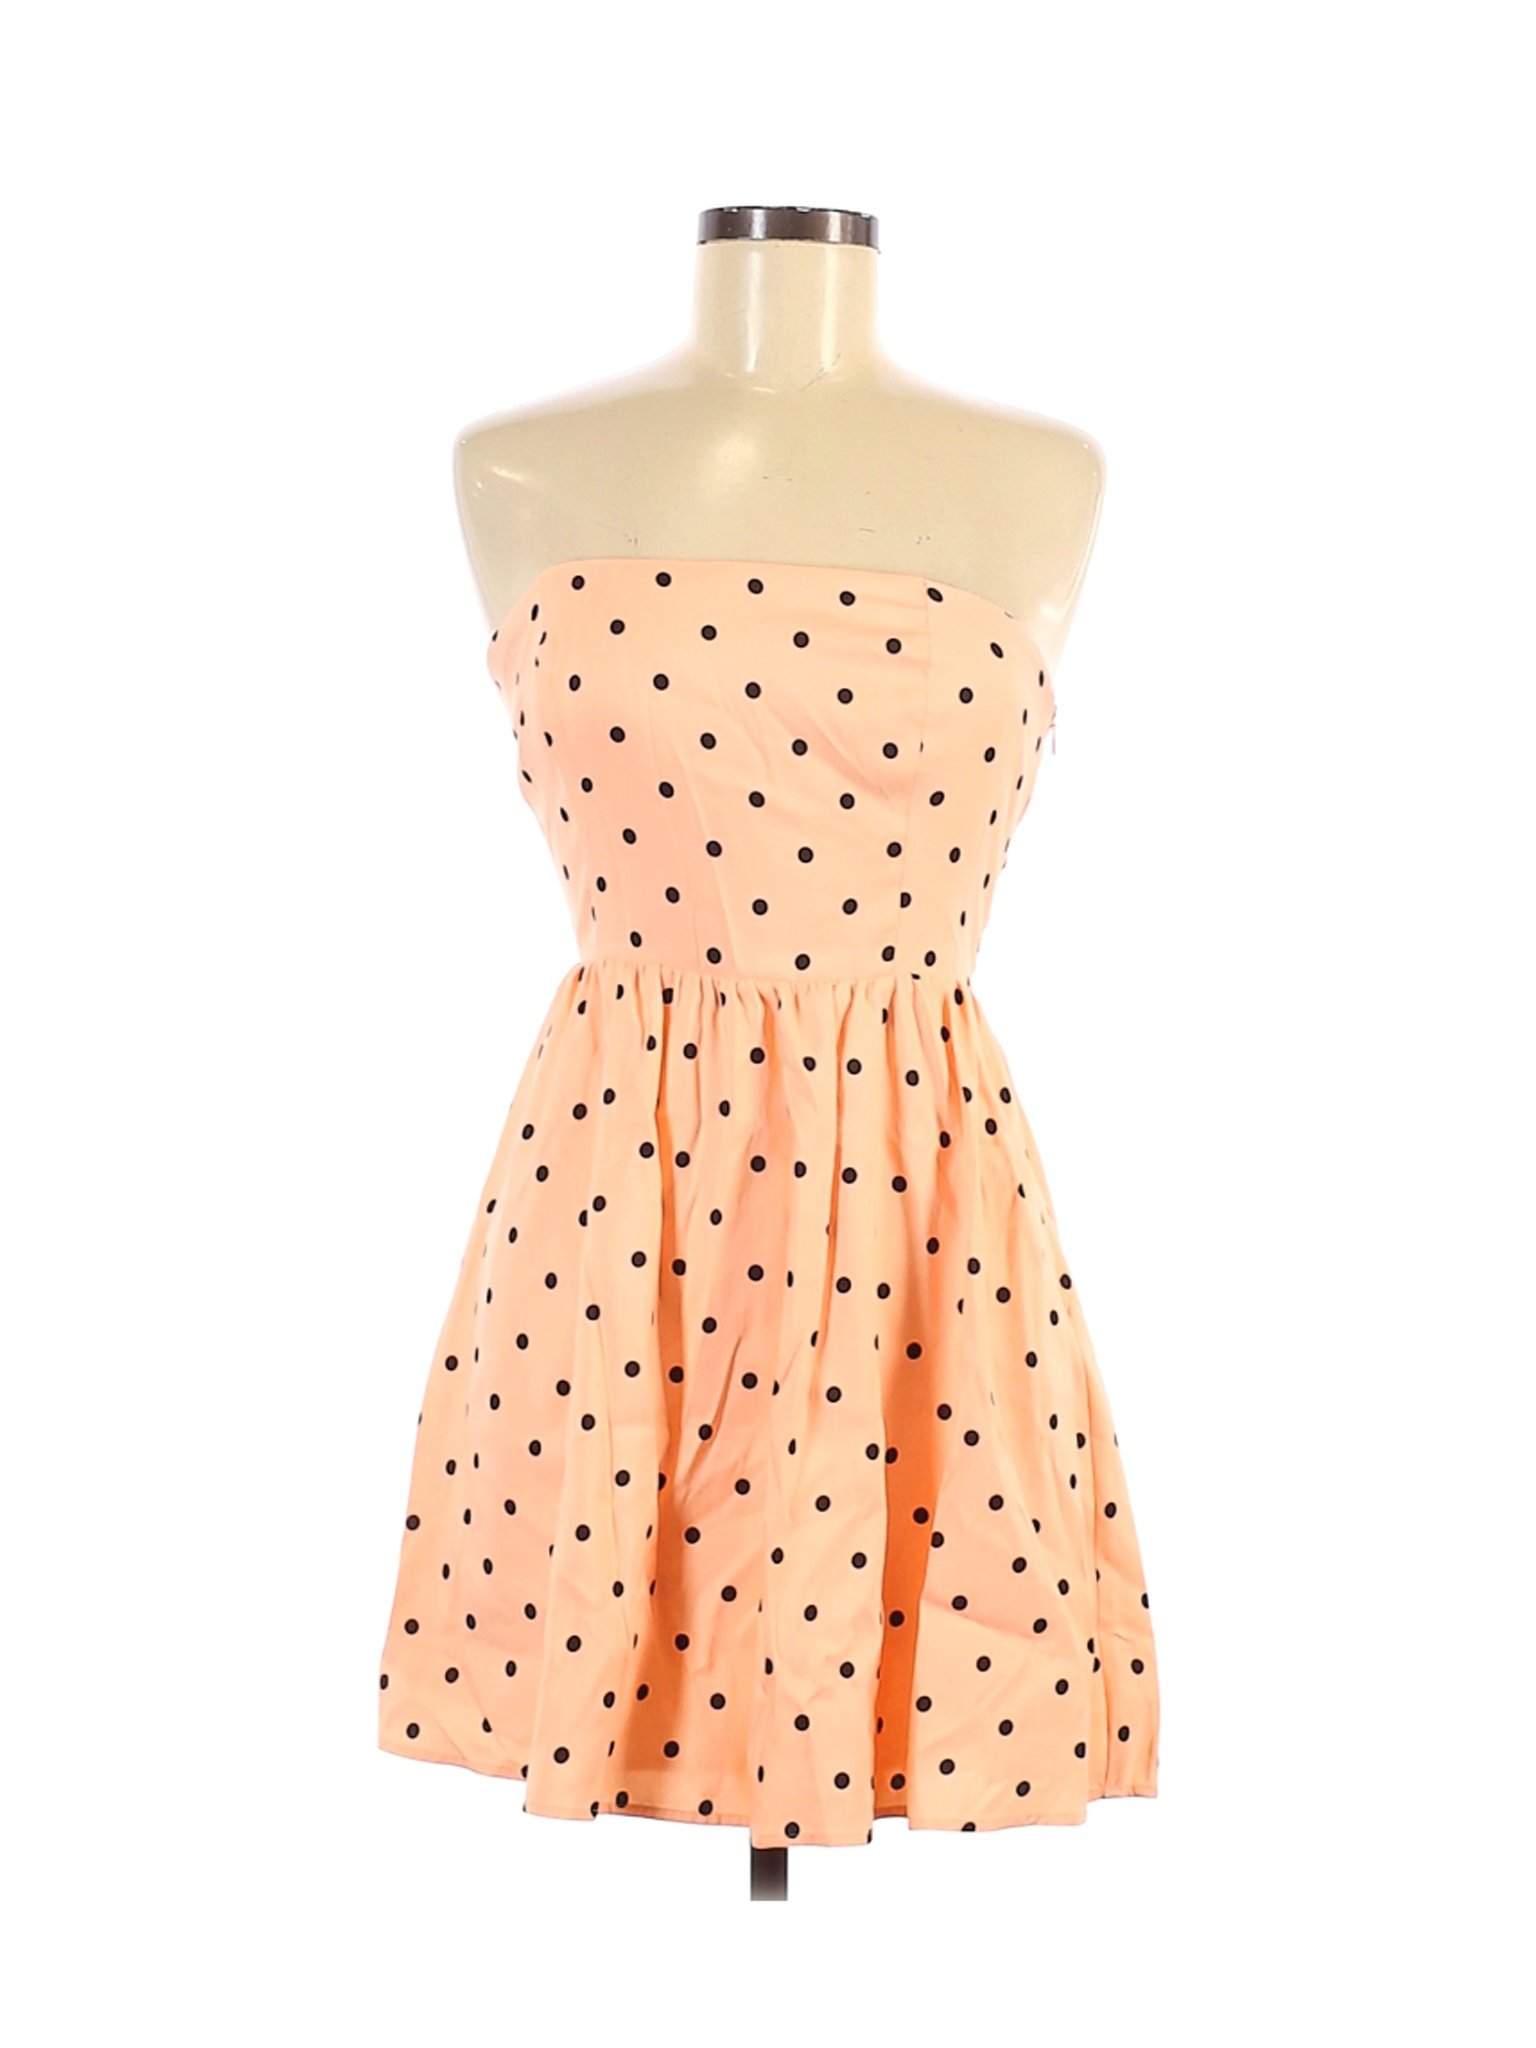 Forever 21 Women Orange Casual Dress M | eBay